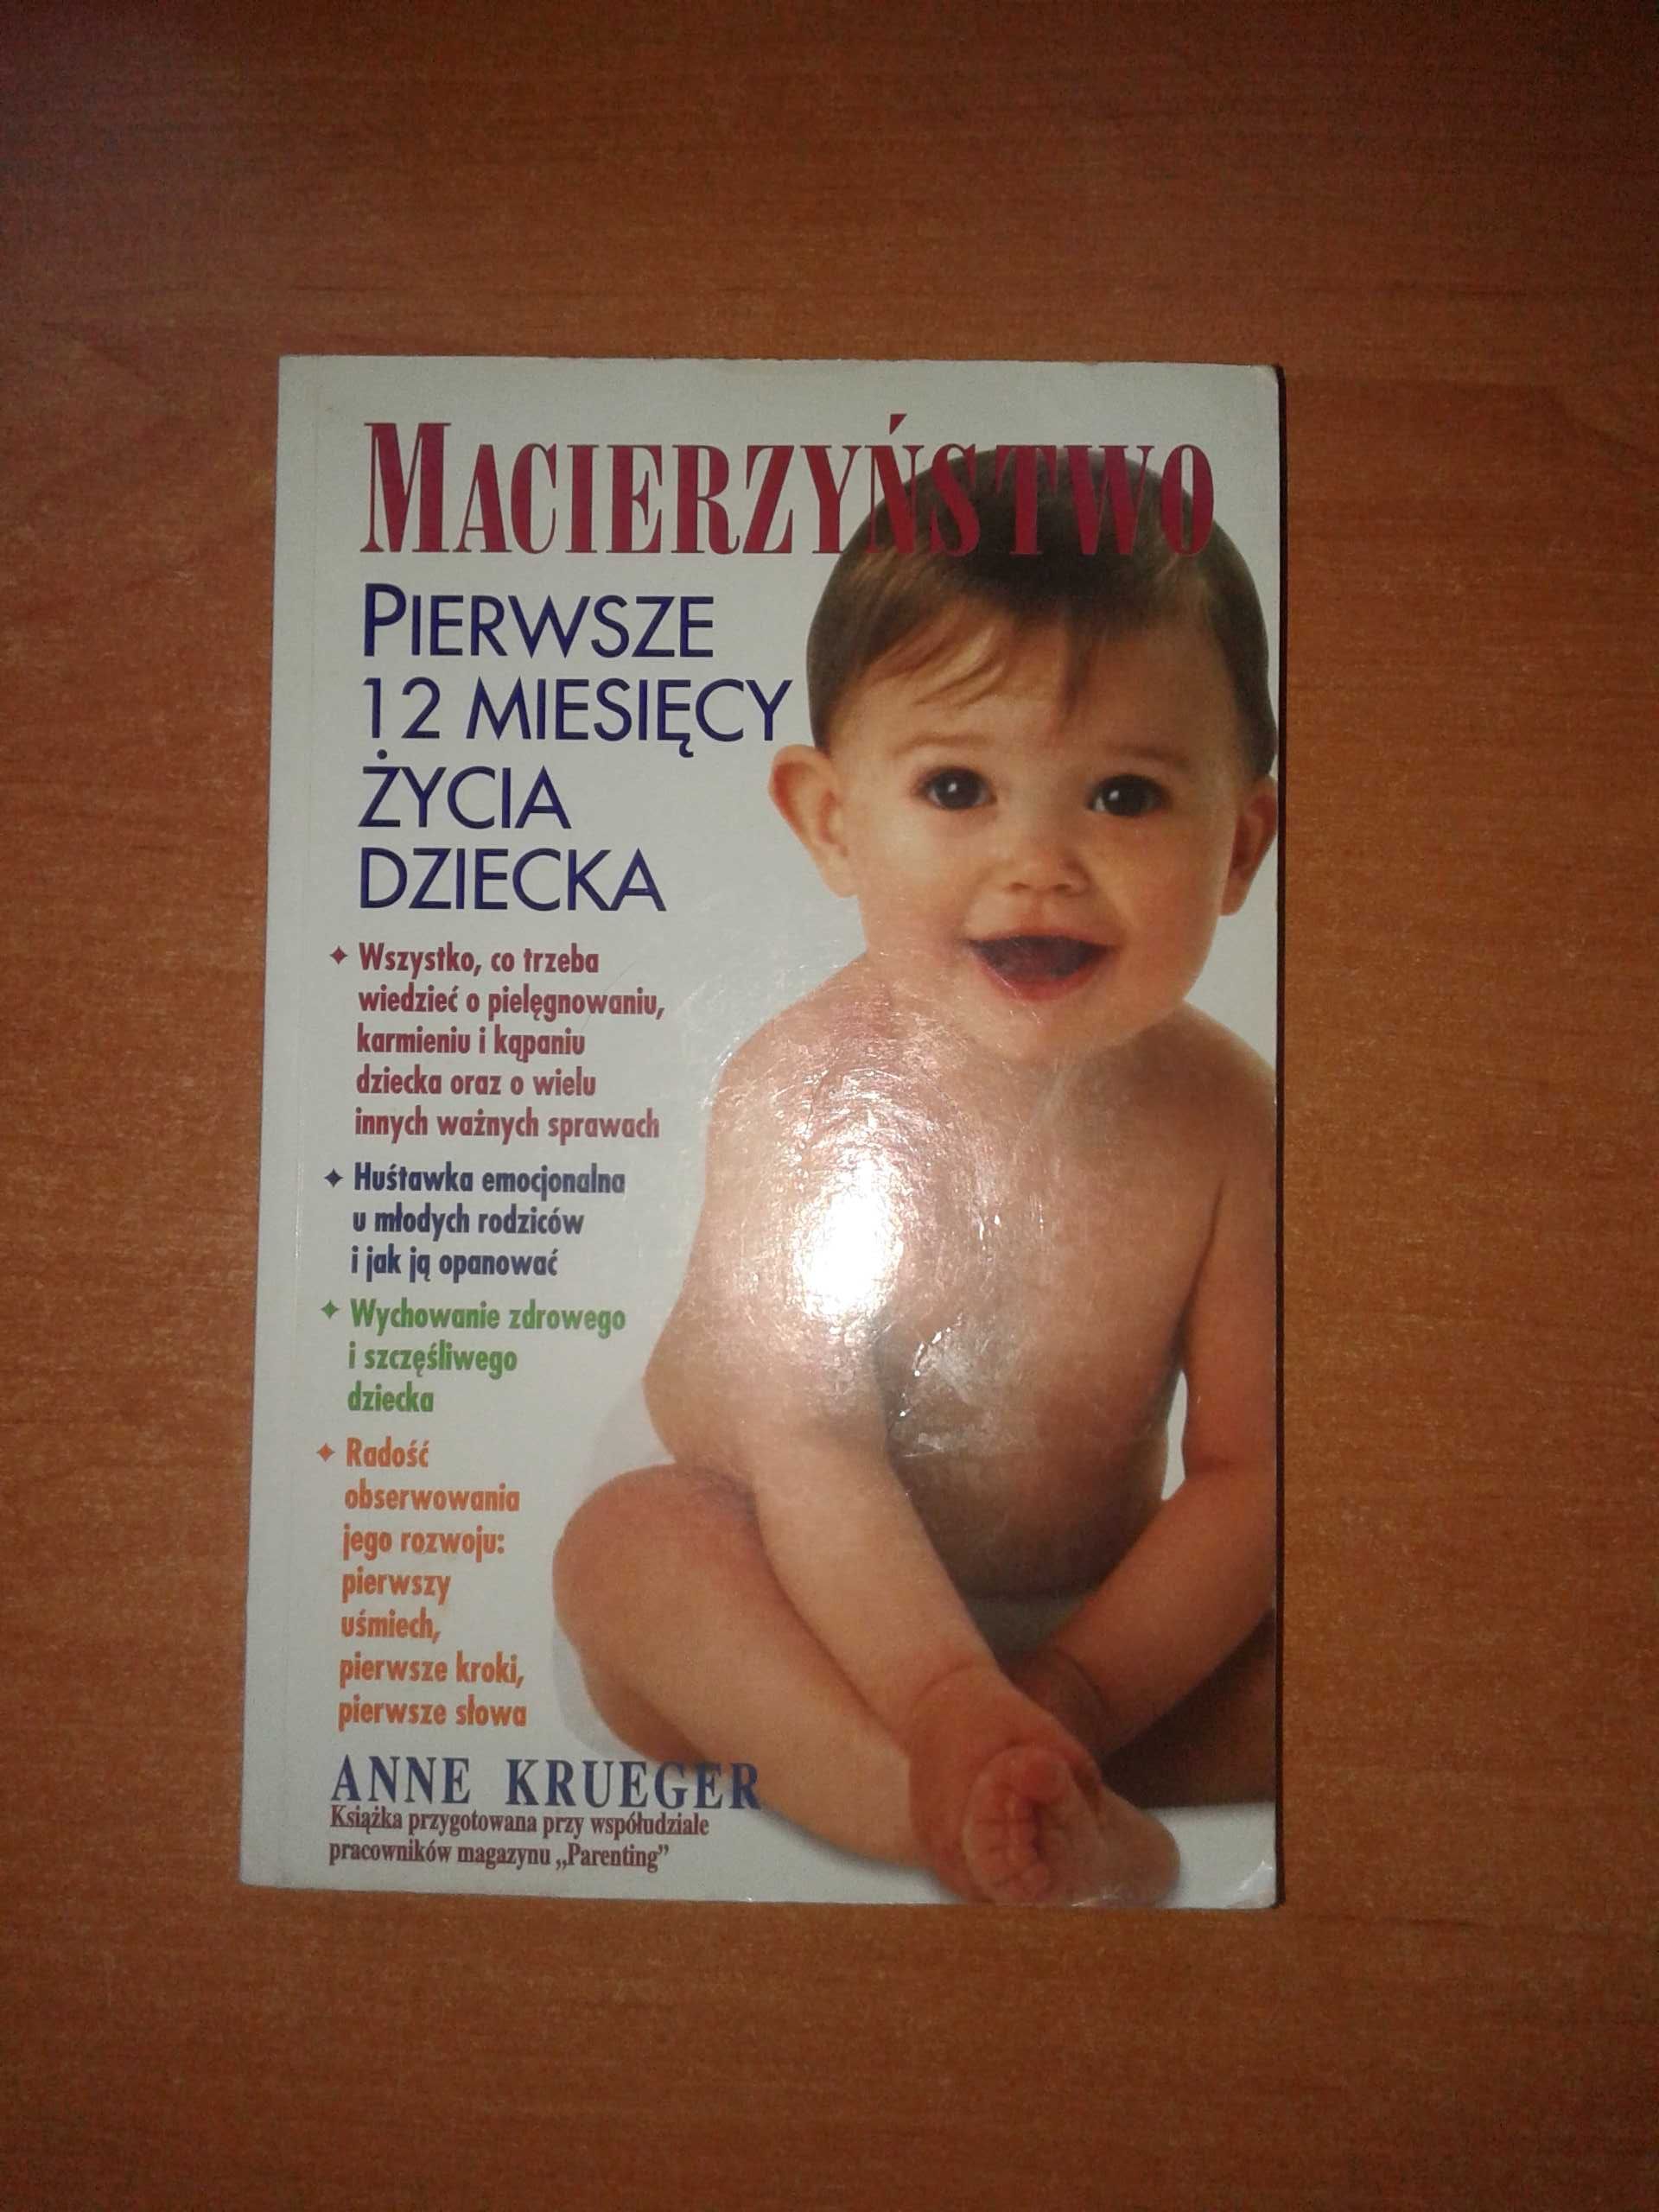 Macierzyństwo pierwsze 12 miesięcy życia dziecka - Anne Krueger.